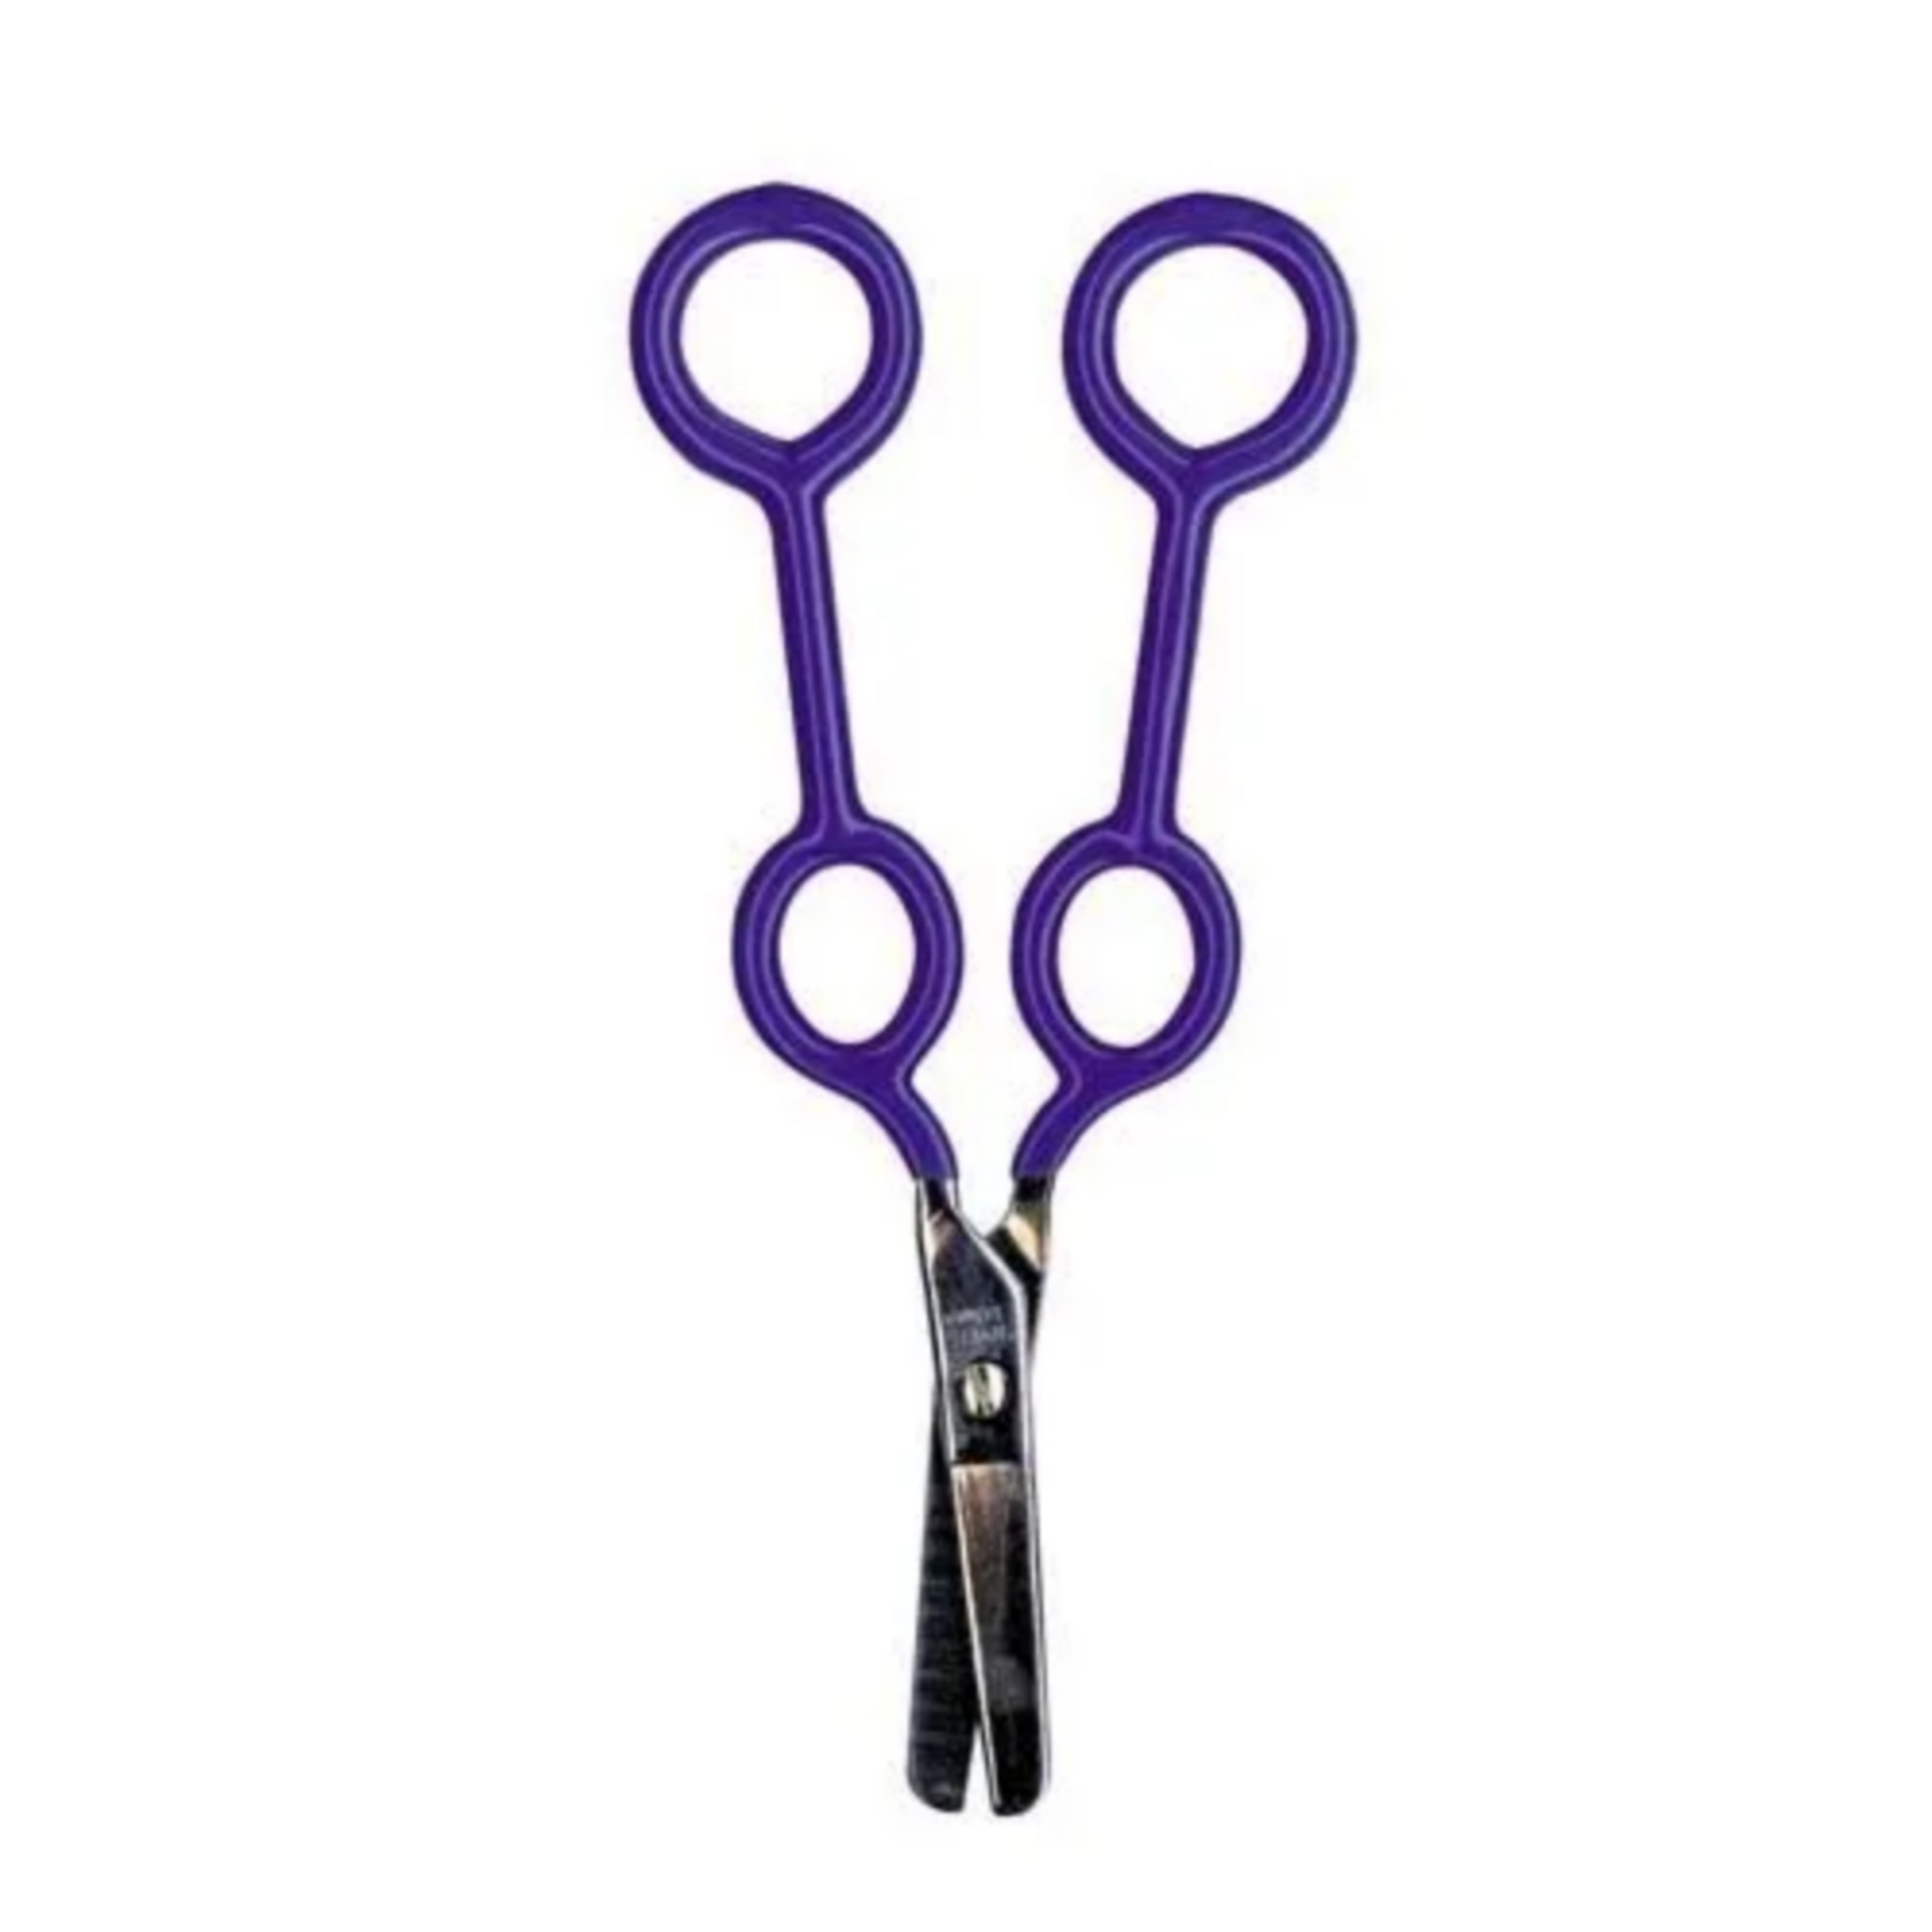 Snippy Easy Spring Loop Scissors